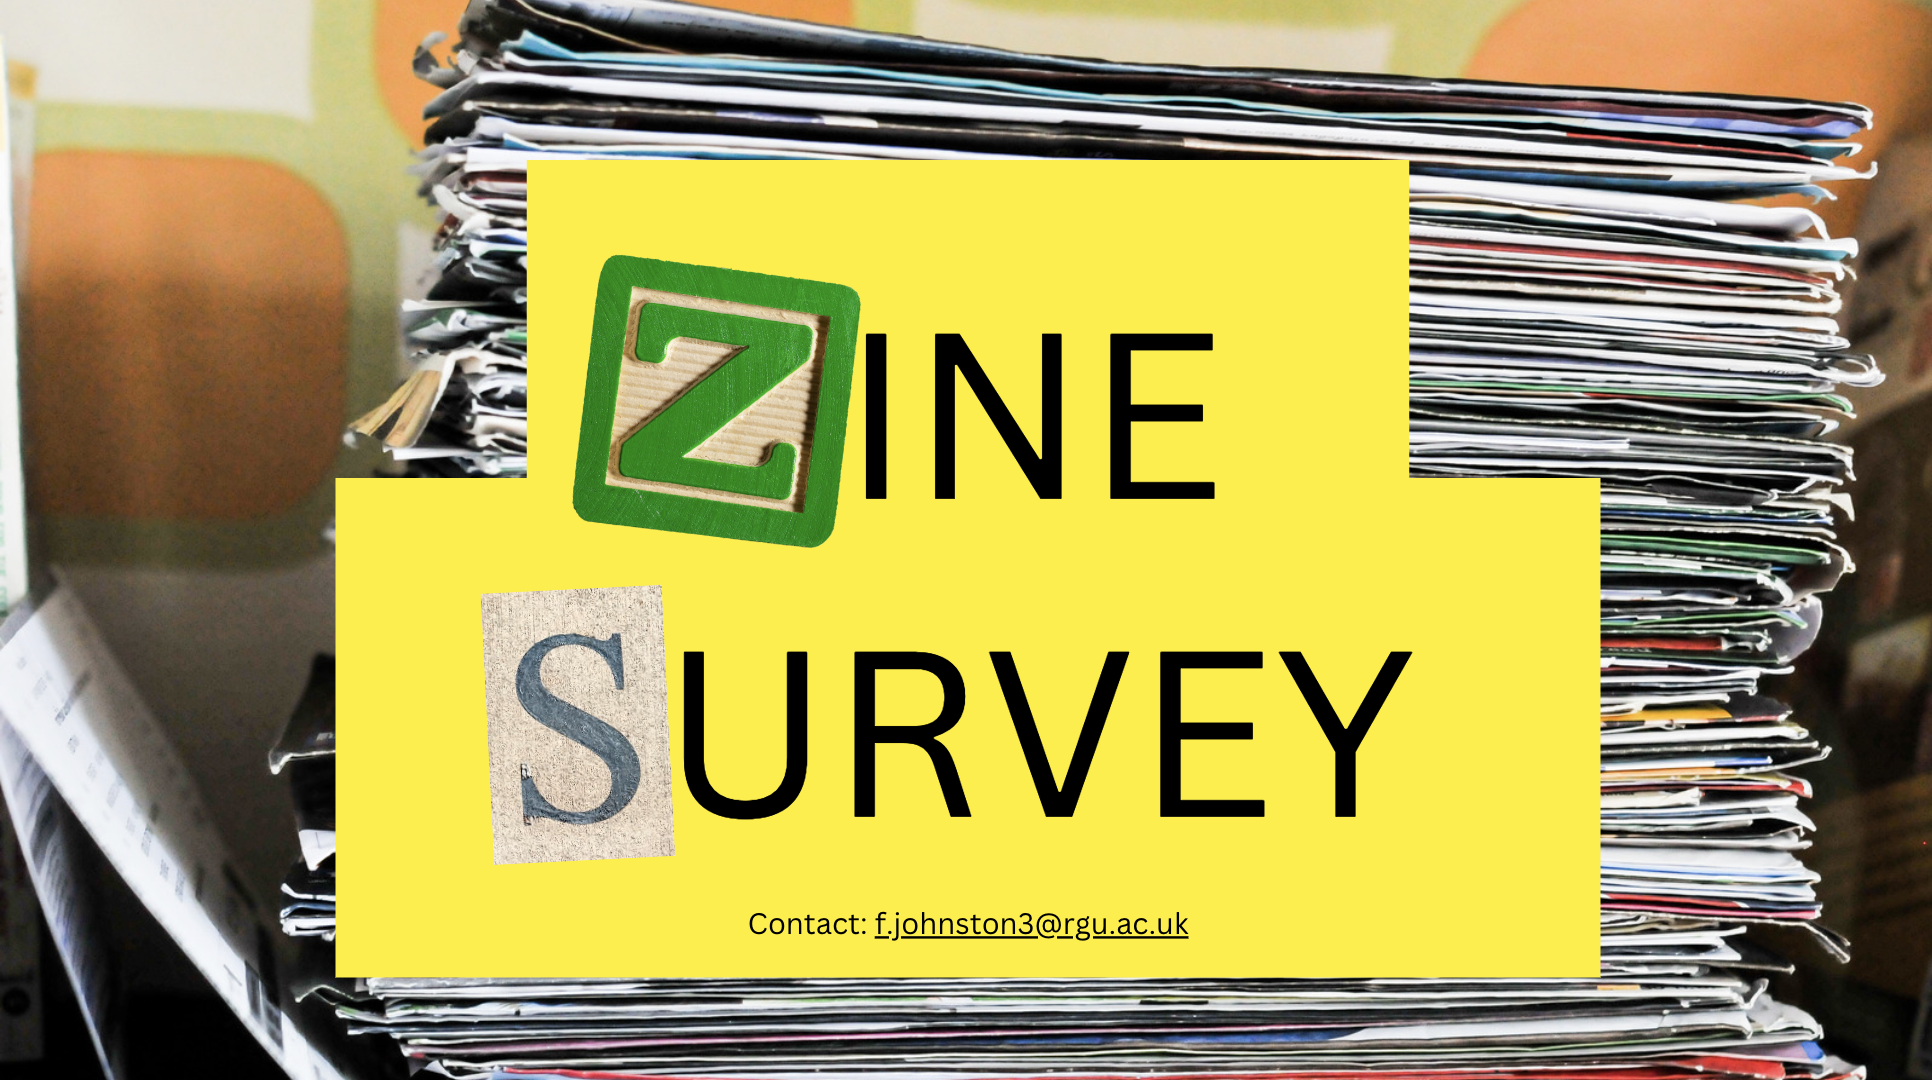 Magazine backdrop with text overlay reading "Zine Survey."